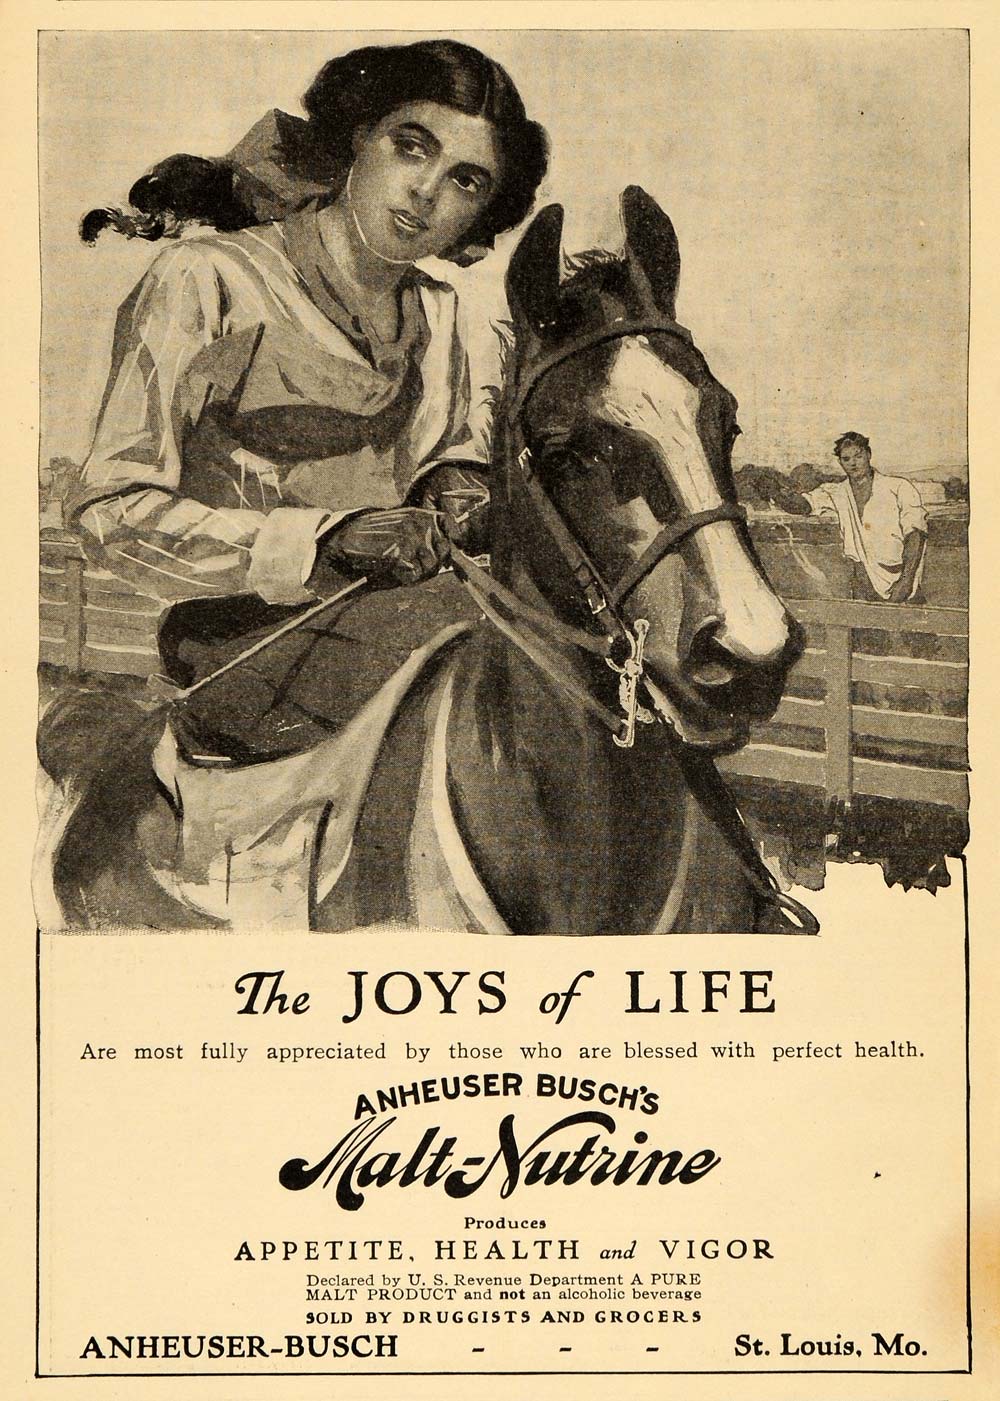 1910 Ad Anheuser Busch Malt Nutrine Extract Tonic St. Louis MO Horseback ARG1